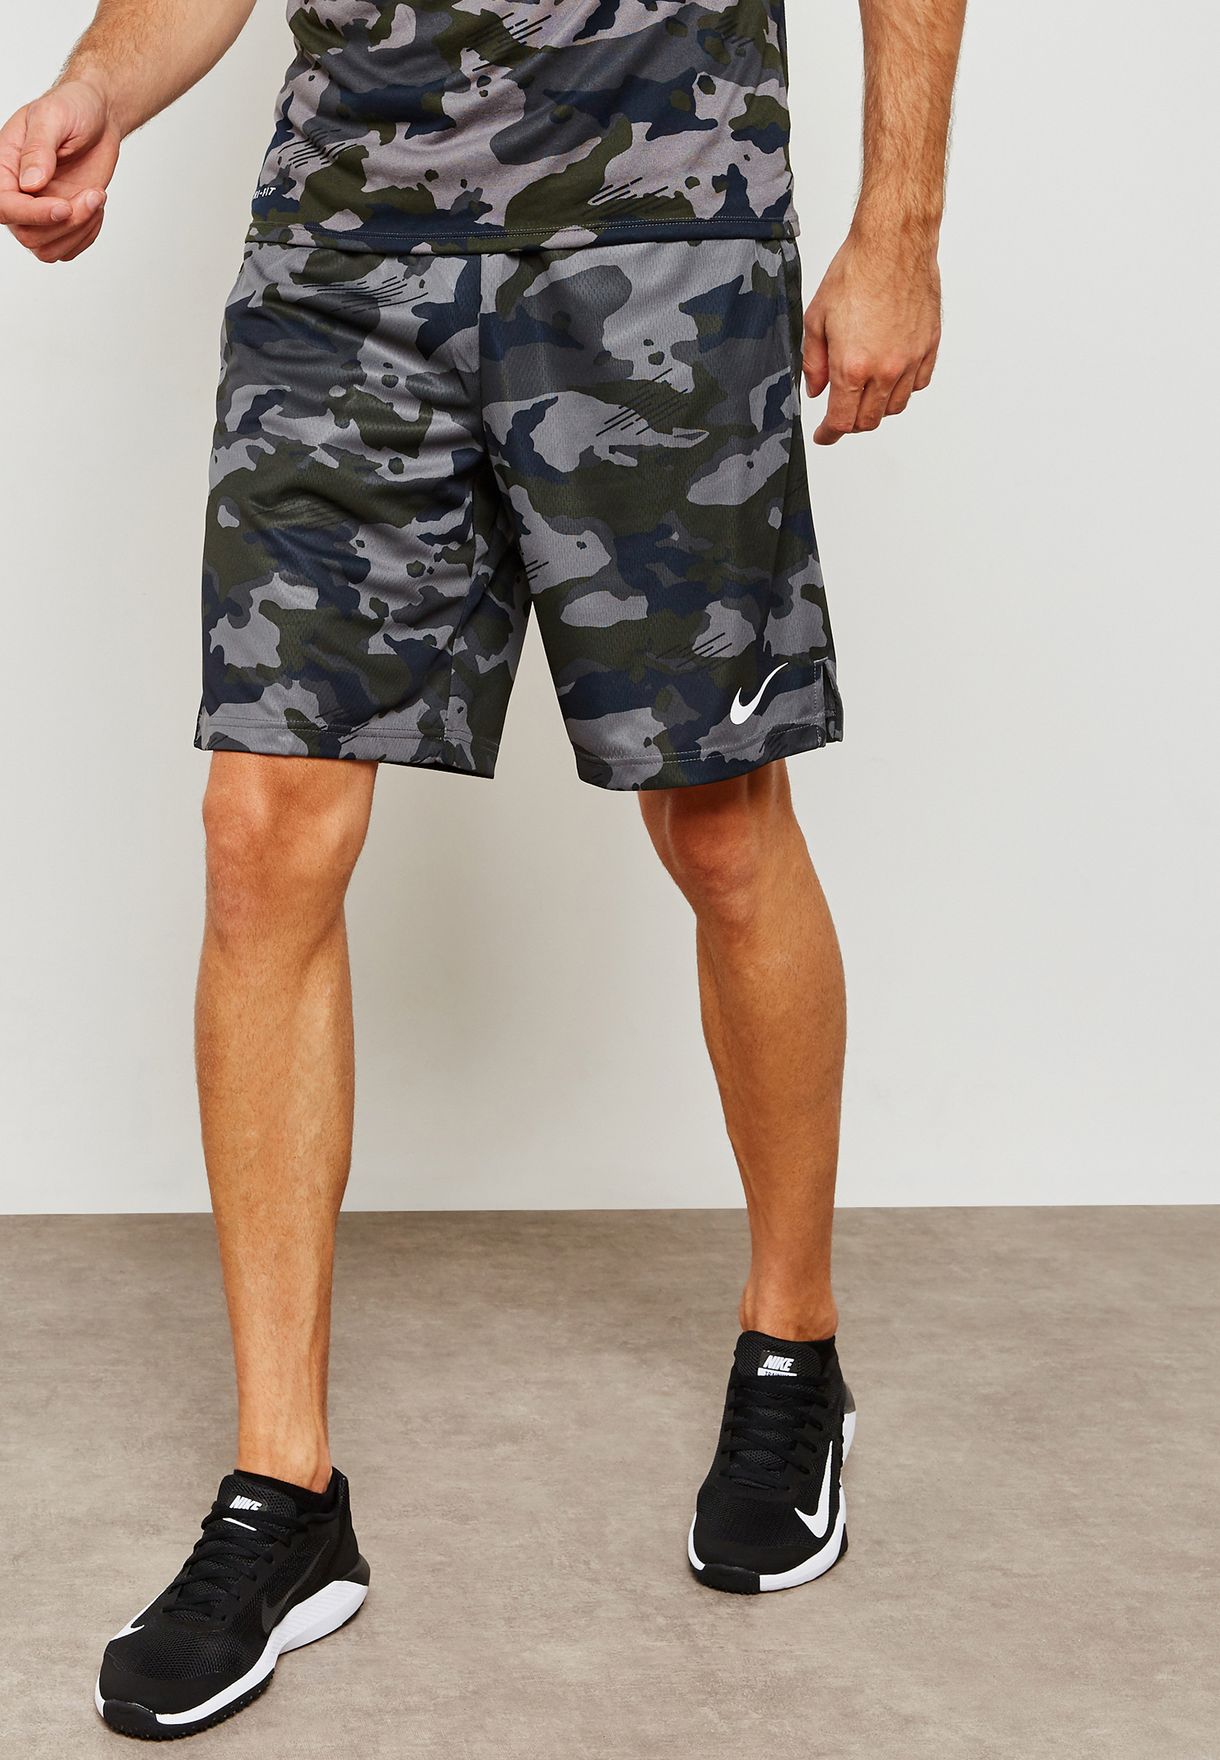 camouflage shorts nike